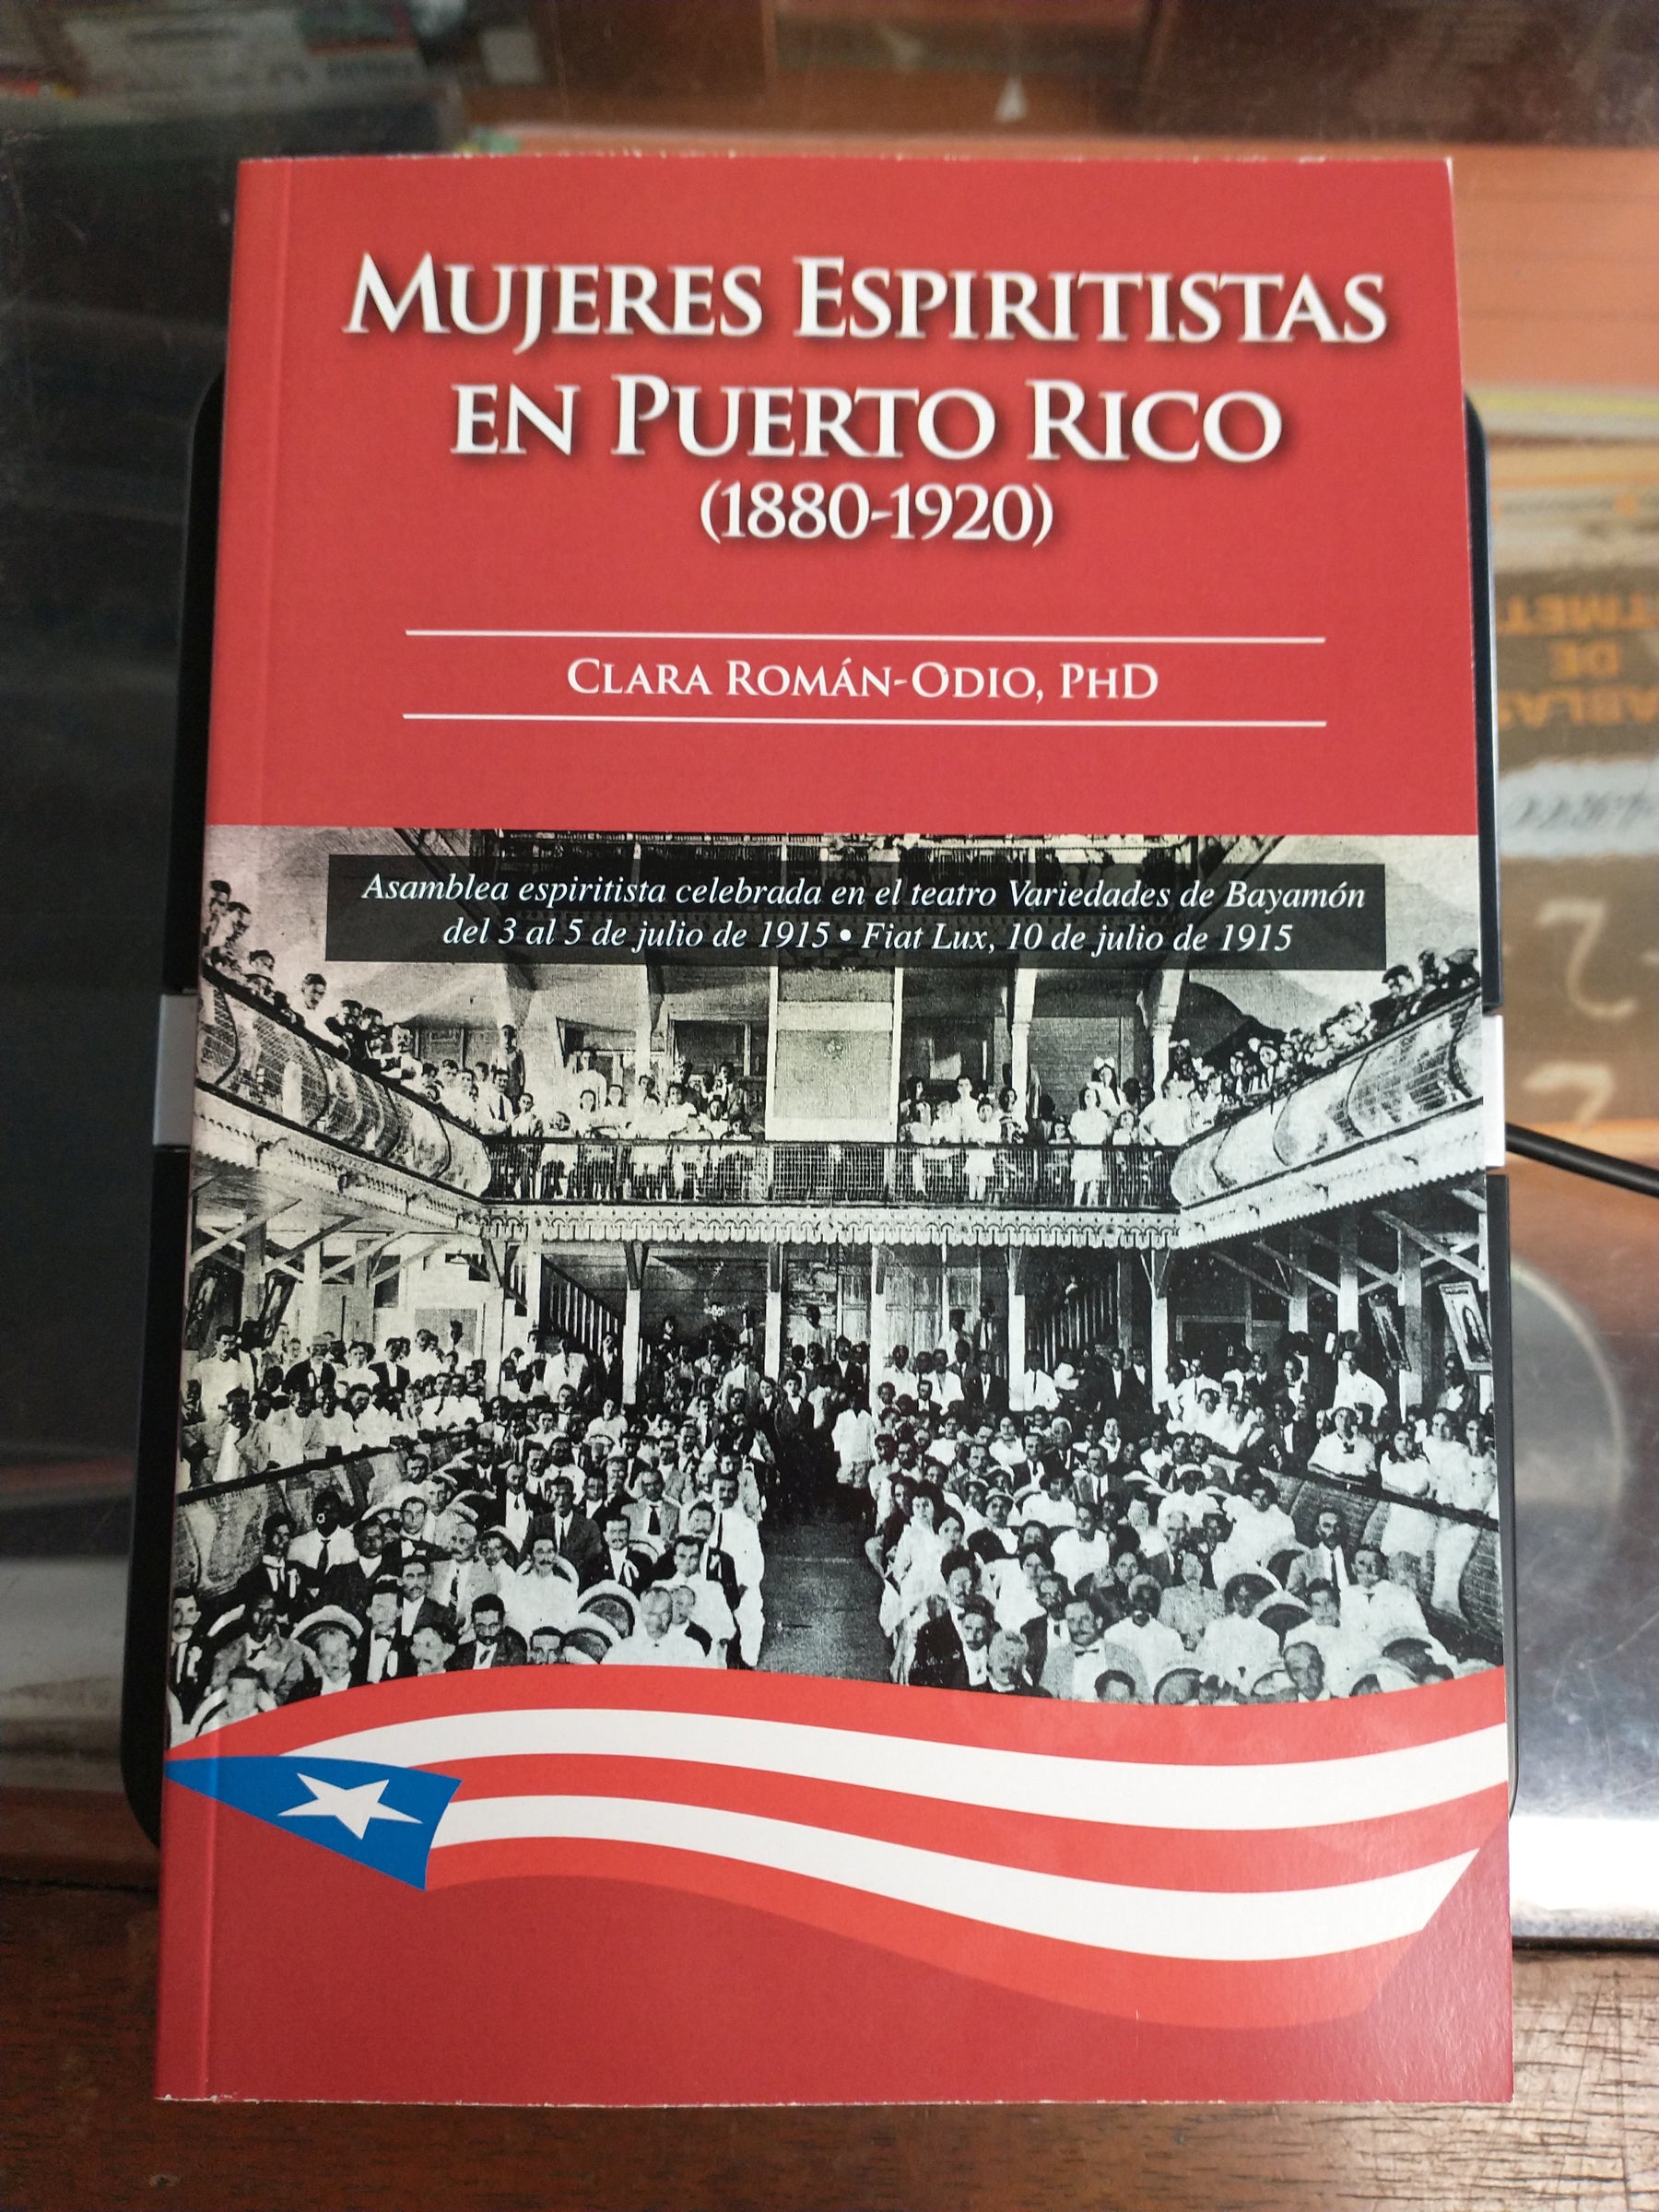 Puerto Rico-Sólida acogida a libro de Clara Román-Odio sobre mujeres espiritistas puertorriqueñas